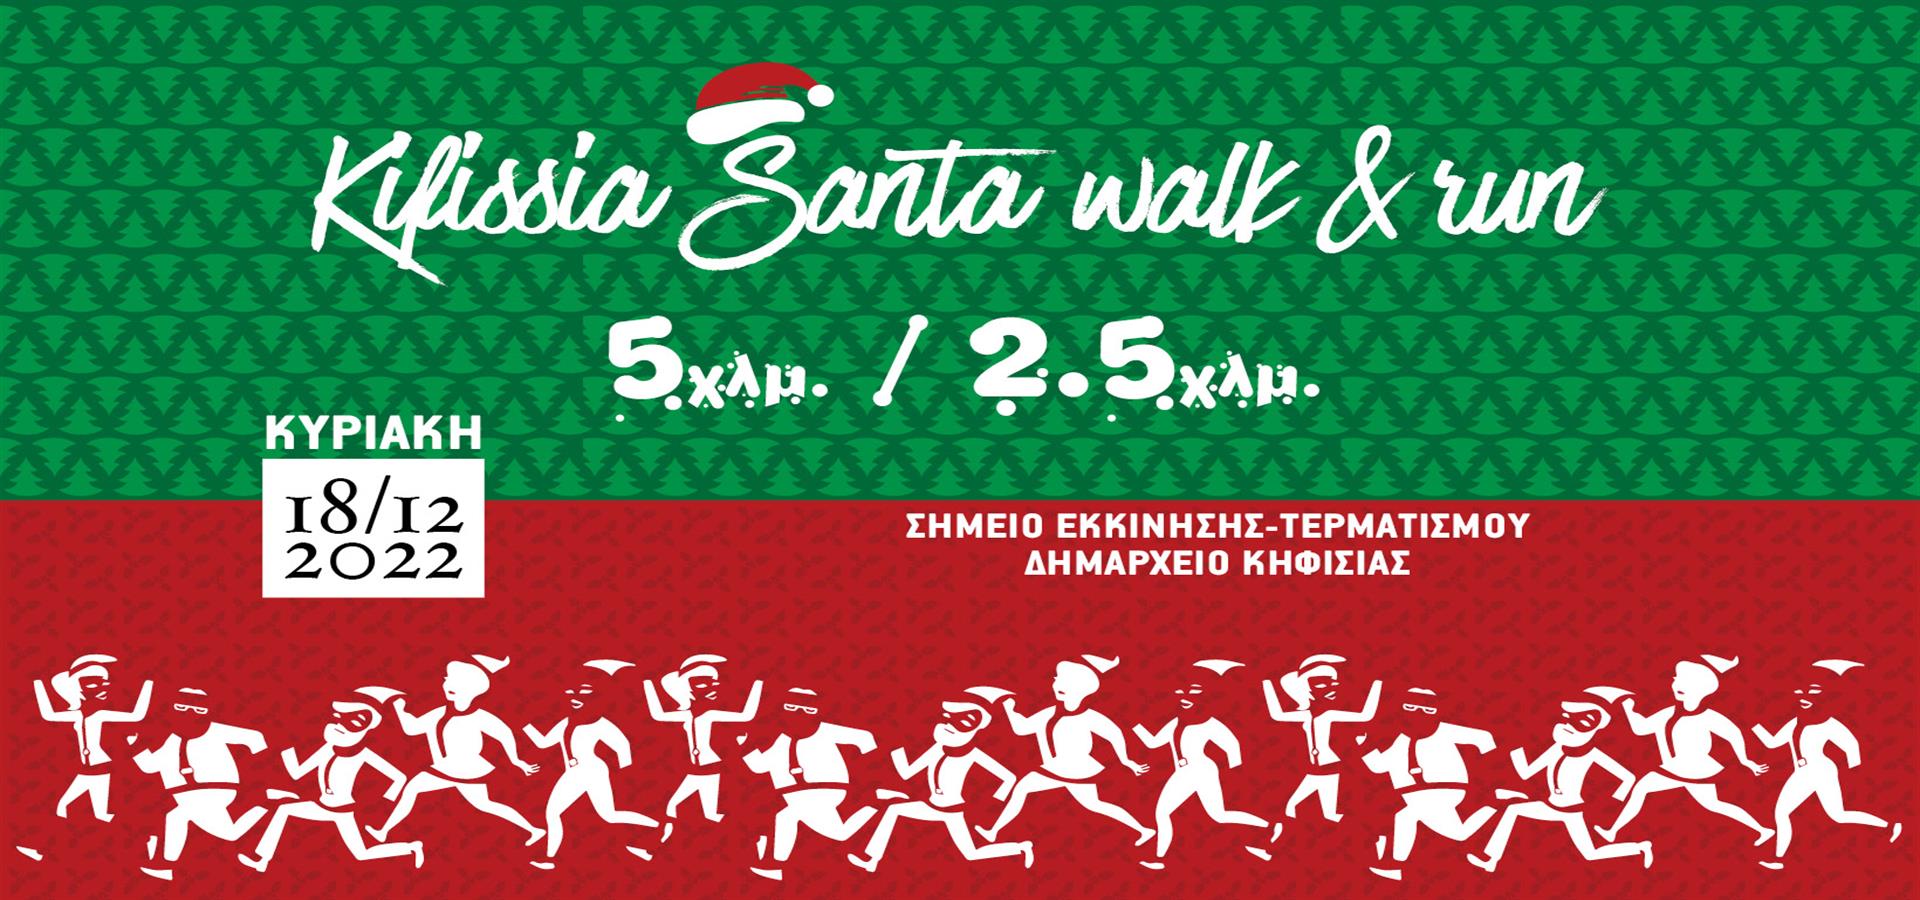 Kifissia Santa Walk & Run